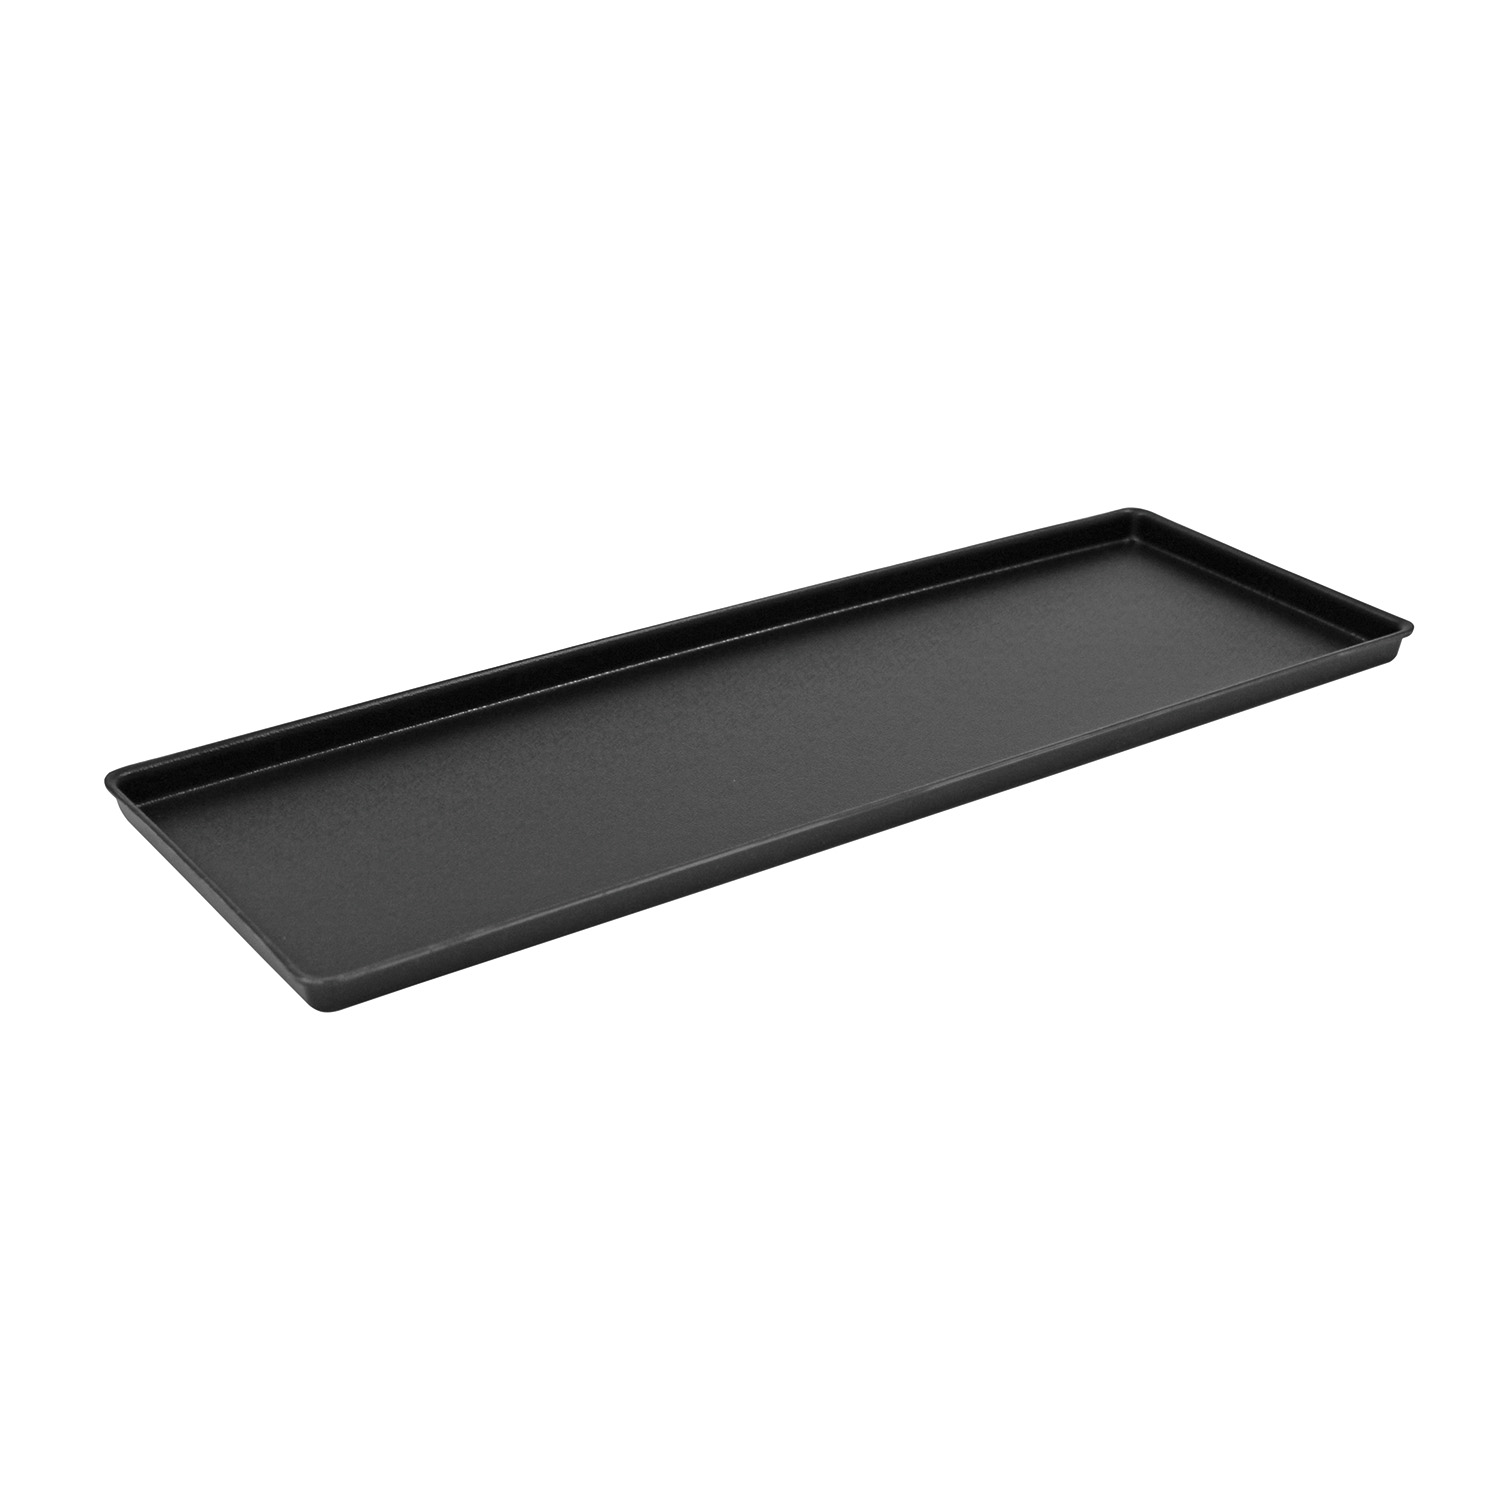 Auslagetablett 60 x 20 cm ABS, schwarz, genarbte Oberfläche